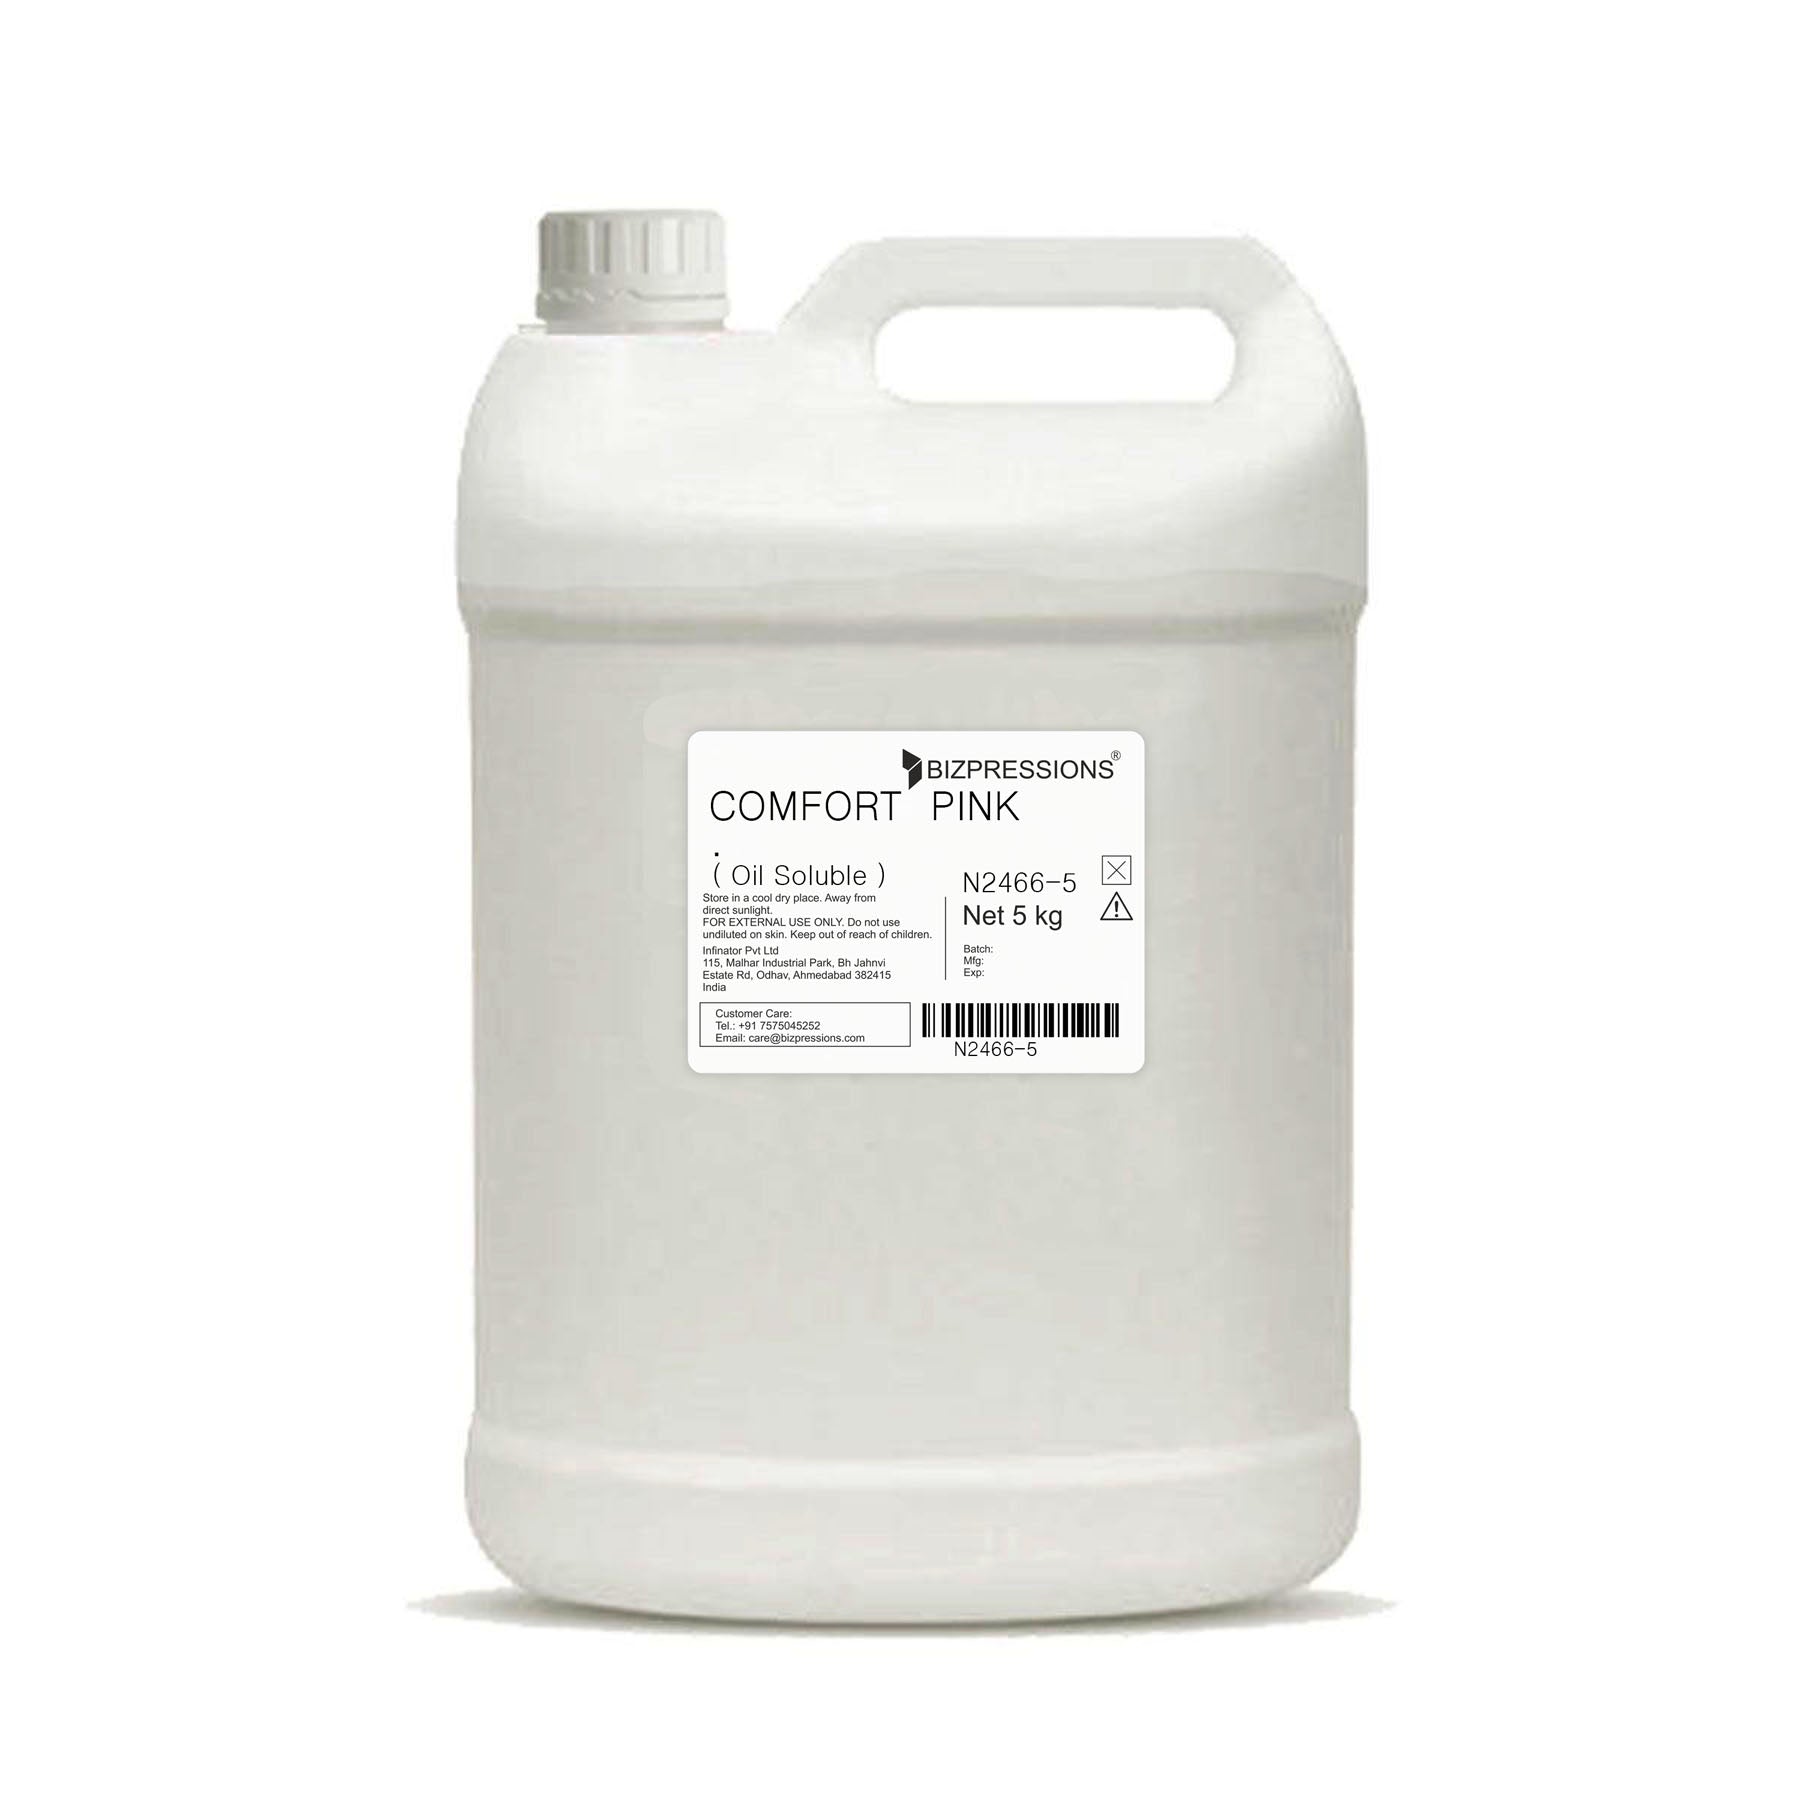 COMFORT PINK - Fragrance ( Oil Soluble ) - 5 kg